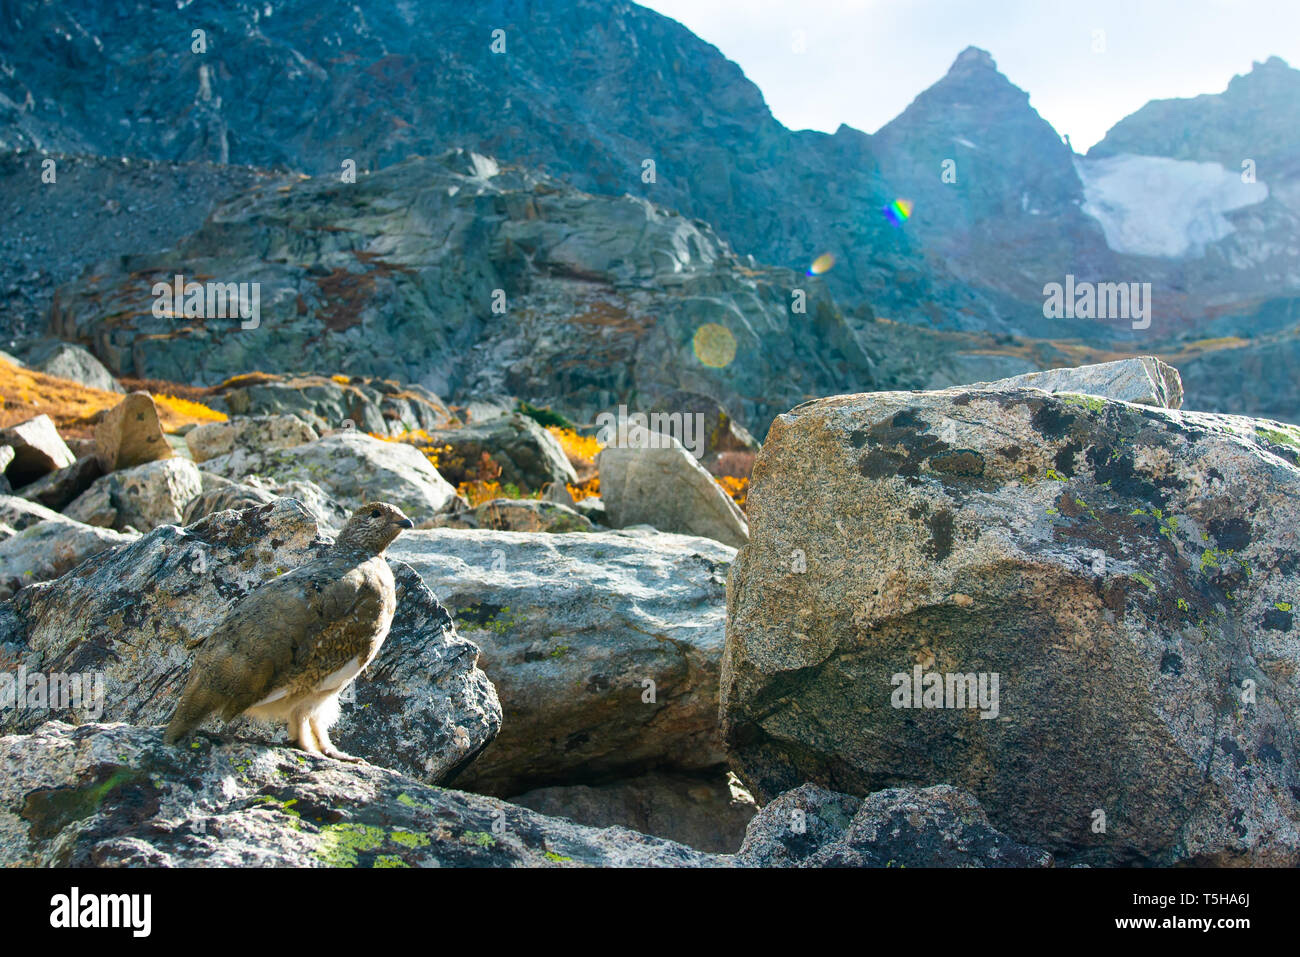 A camouflaged Ptarmigan in a rocky area, Boulder, Colorado, North America Stock Photo